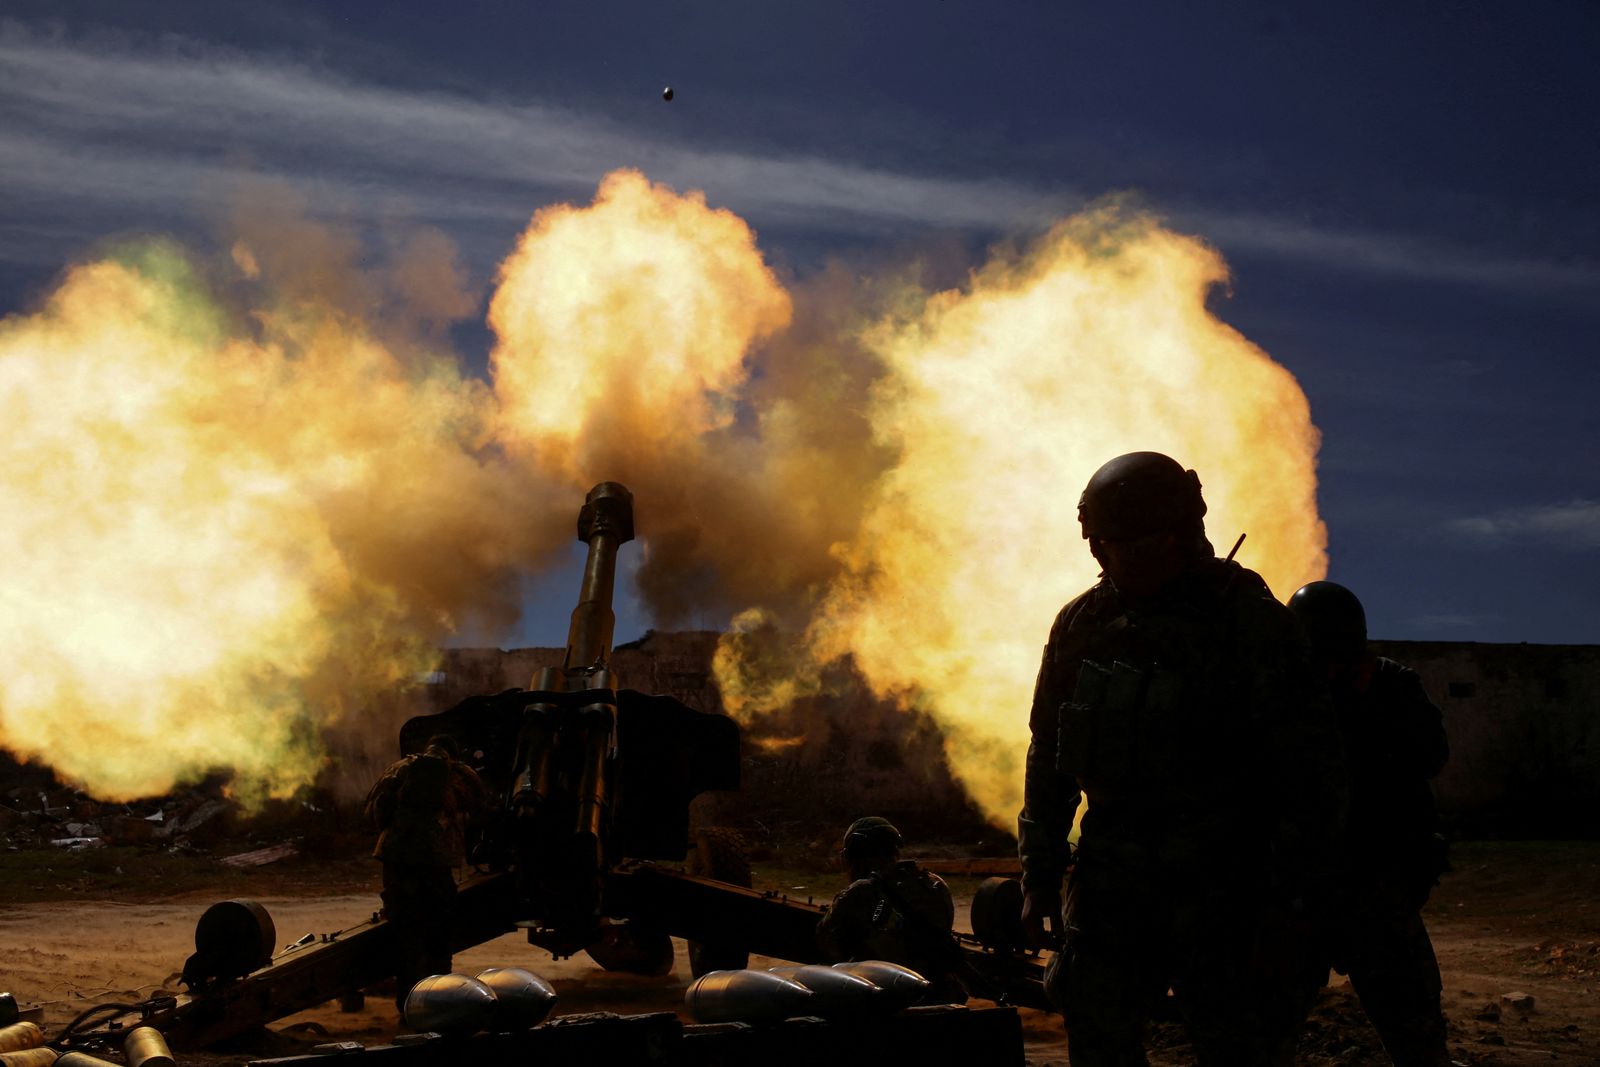 جندي أوكراني يطلق النار من مدفع هاوتزر، مع استمرار الهجوم الروسي على أوكرانيا، في موقع في منطقة زابوريزهزهيا، أوكرانيا. 28 مارس 2022. - REUTERS